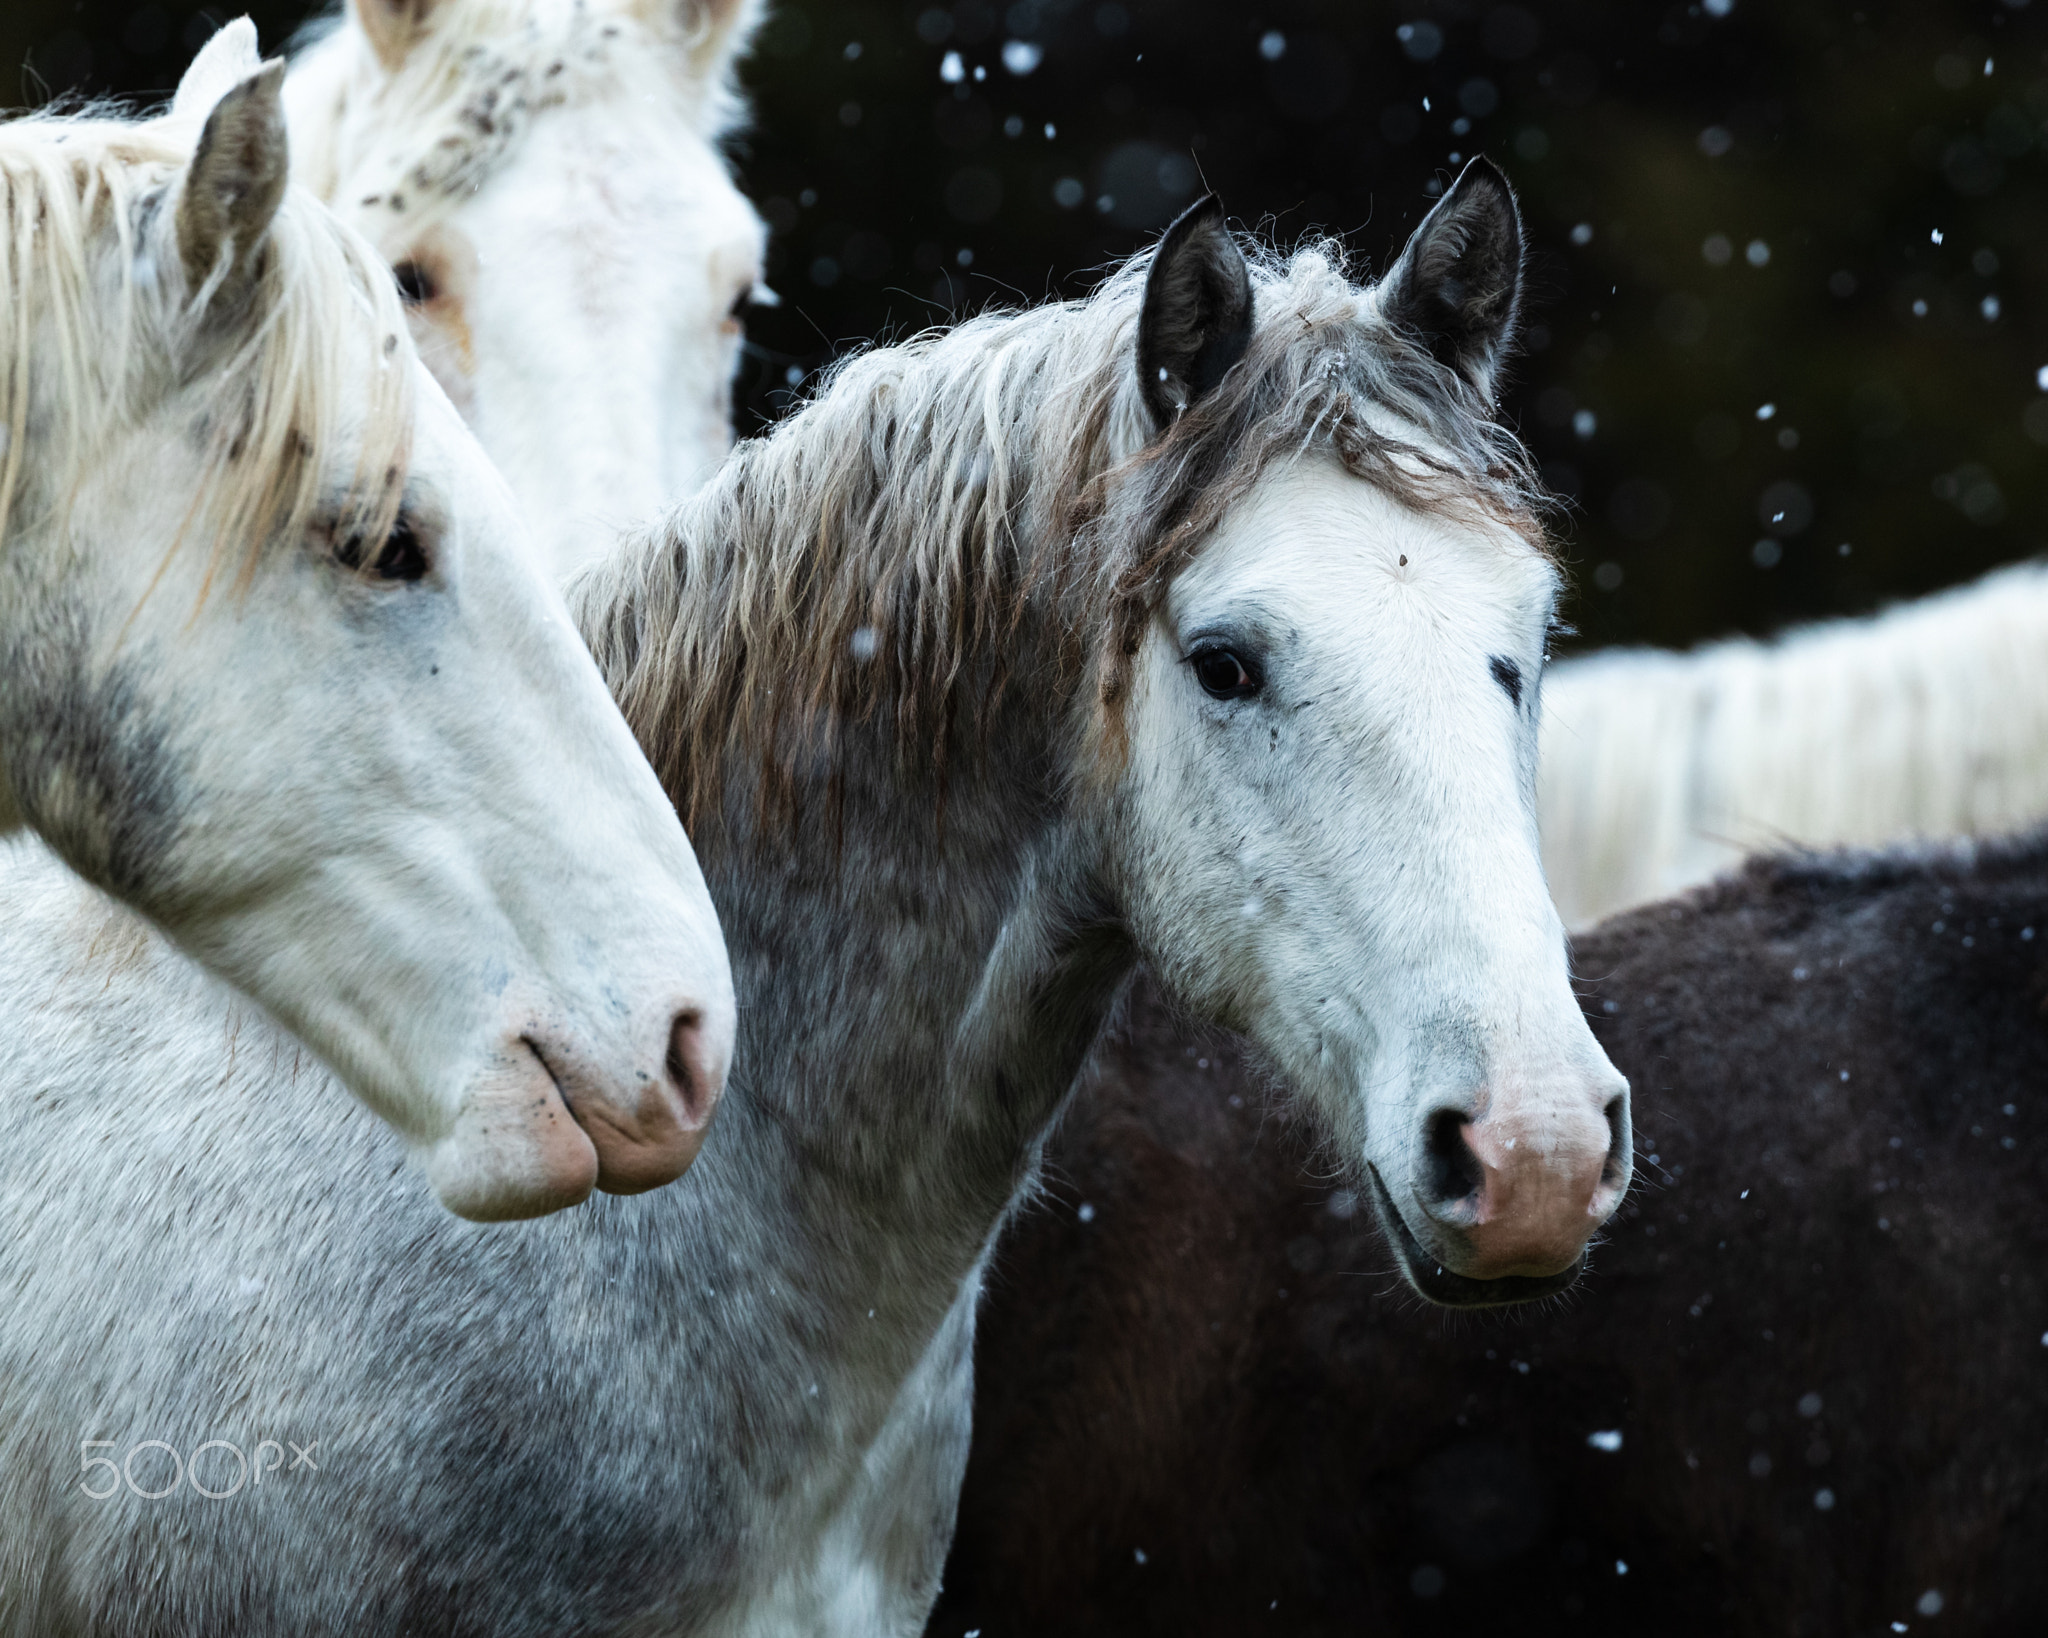 Snowy Wild Horses